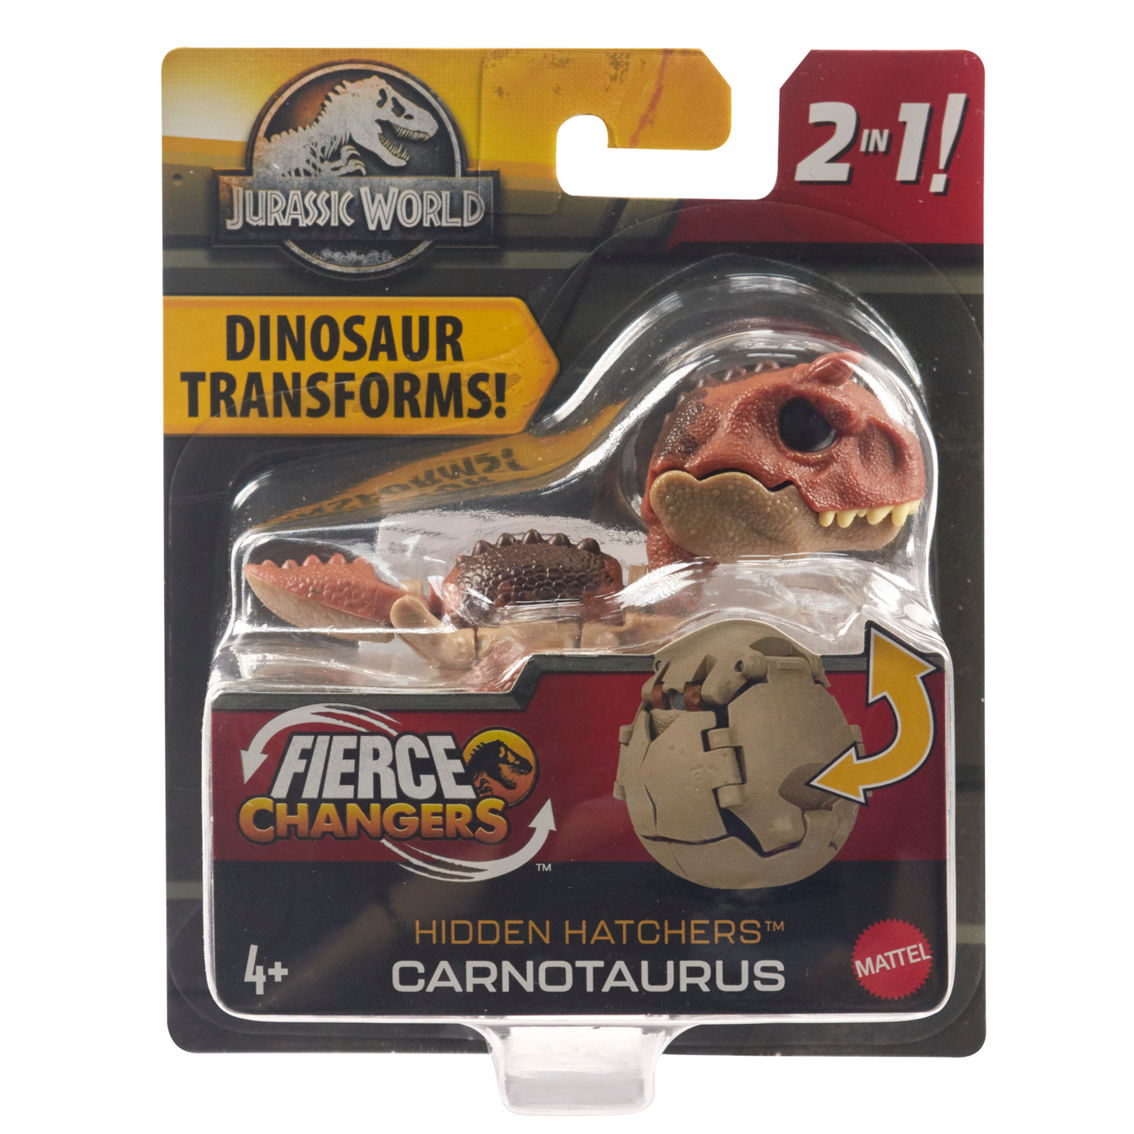 Mattel Jurassic World Fierce Changers Hidden Hatchers Assortment - Image 3 of 5